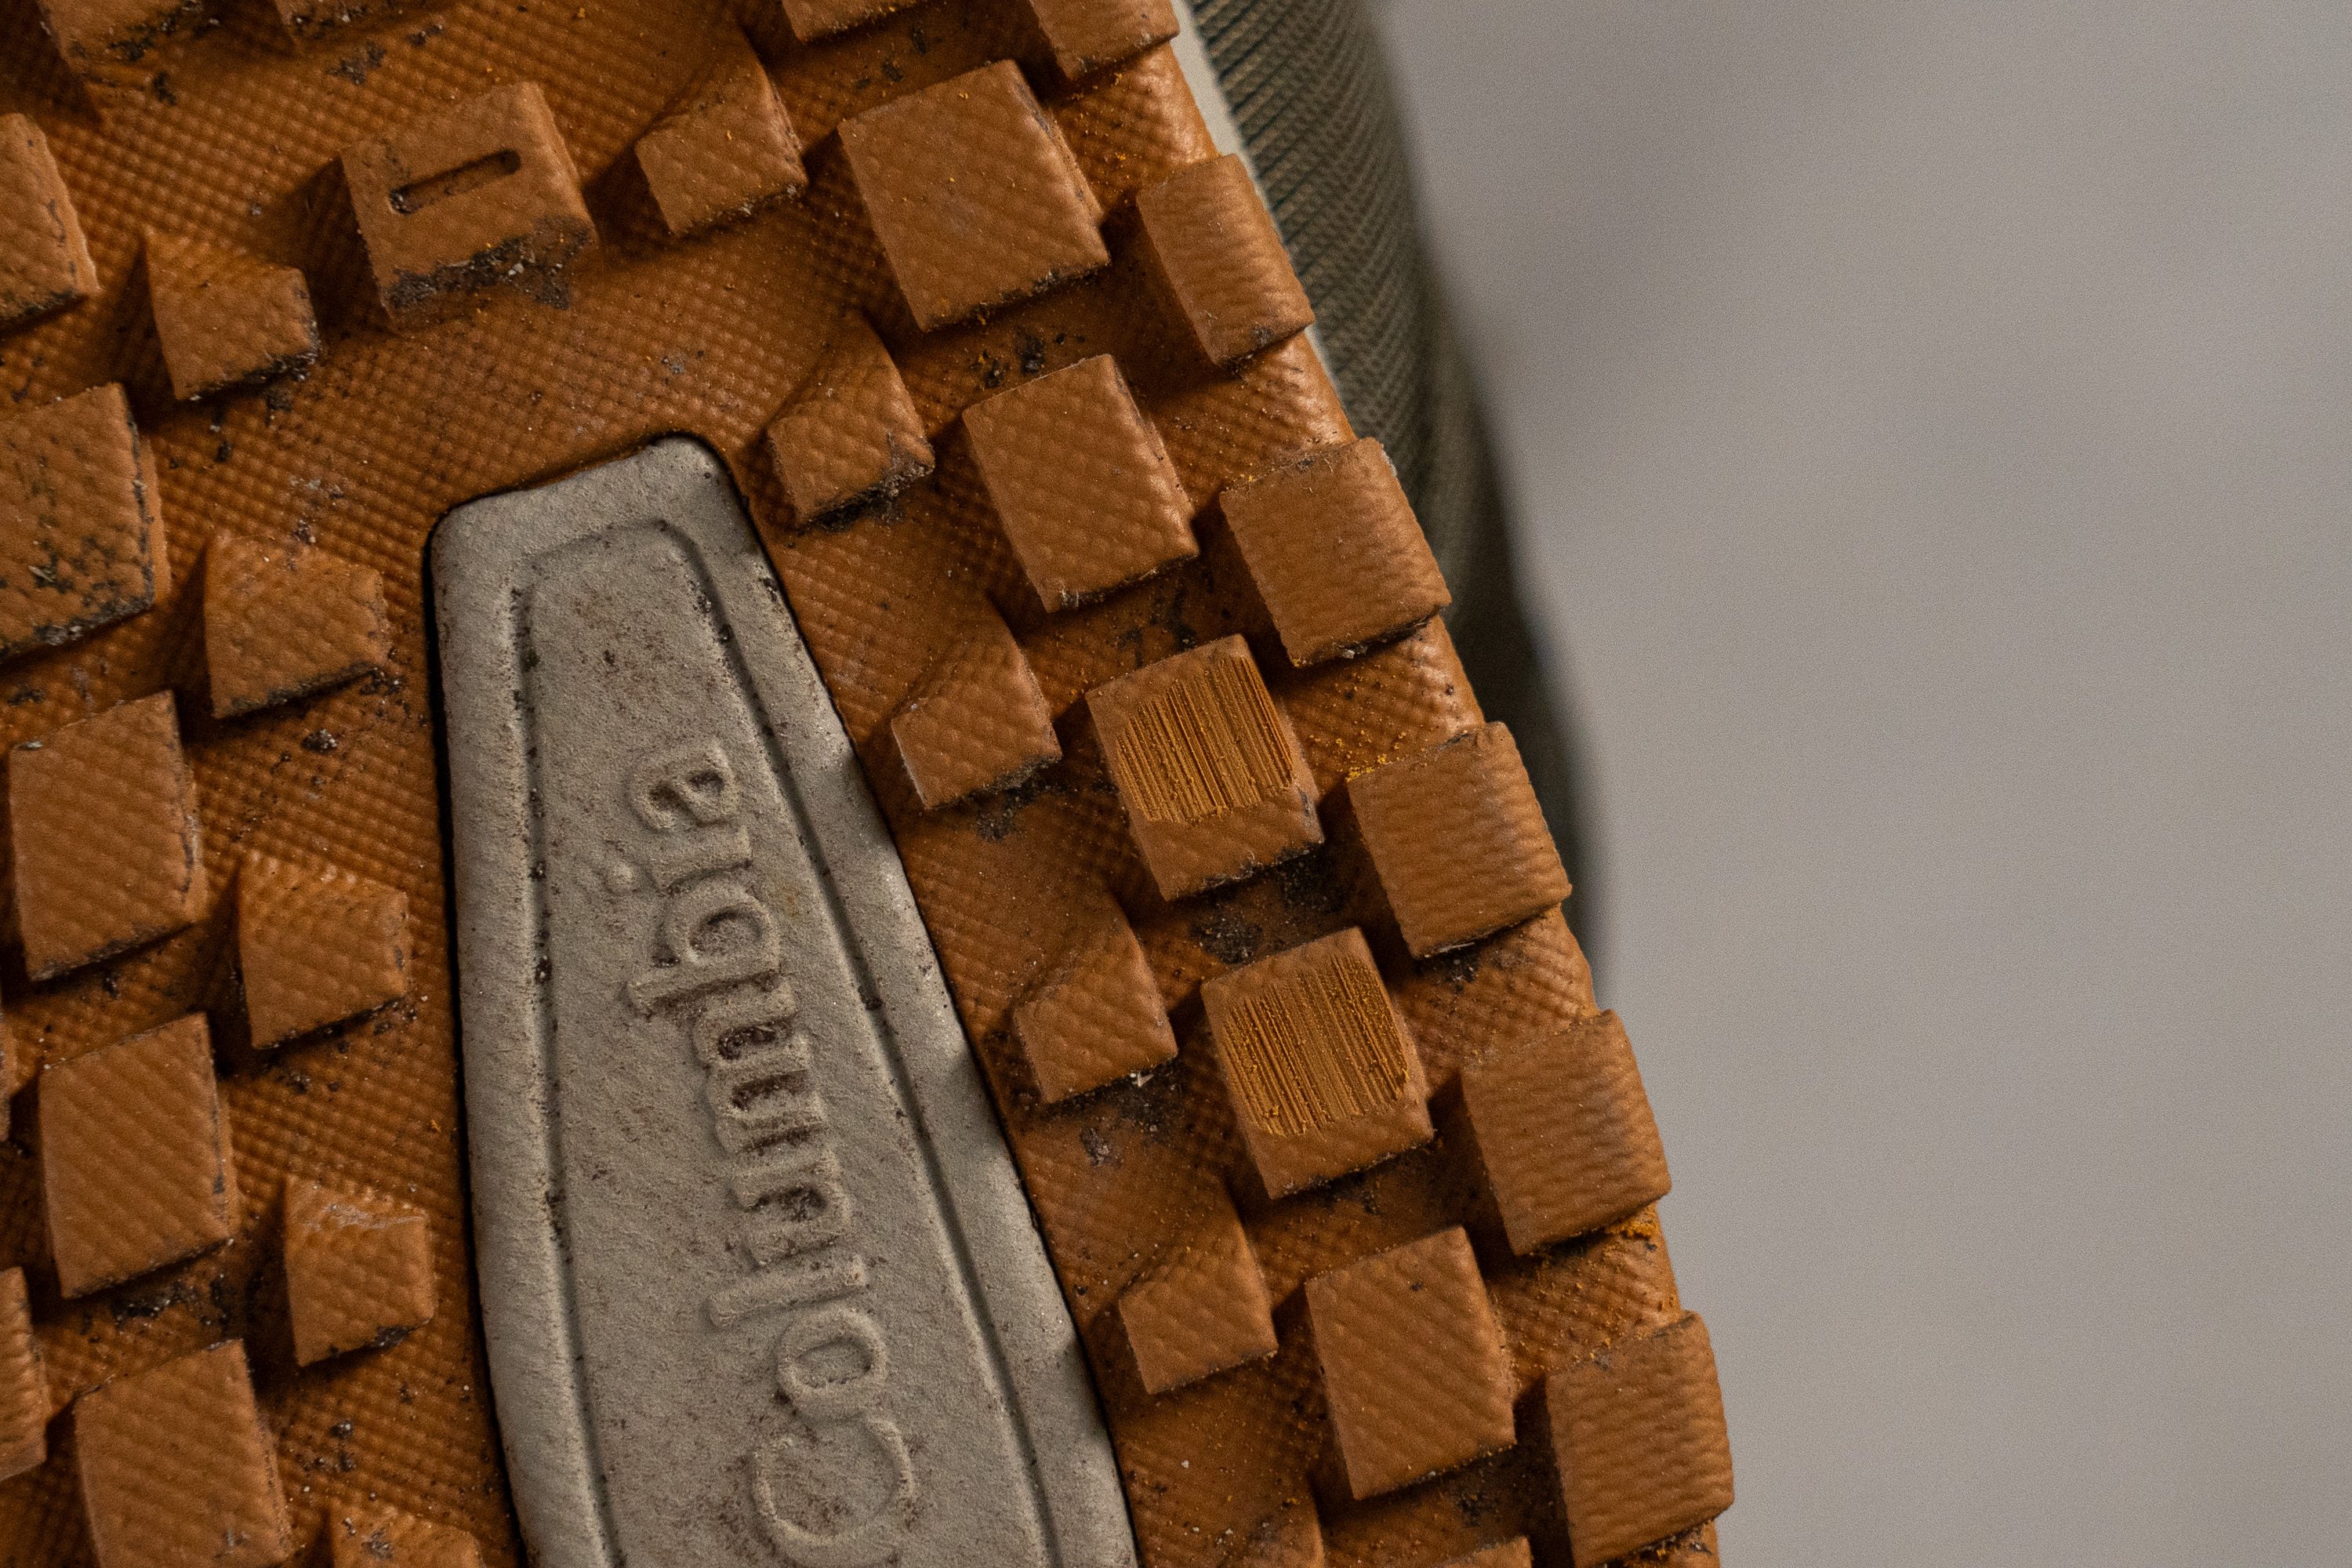 Columbia zapatillas de running Adidas hombre pista talla 33.5 Outsole durability